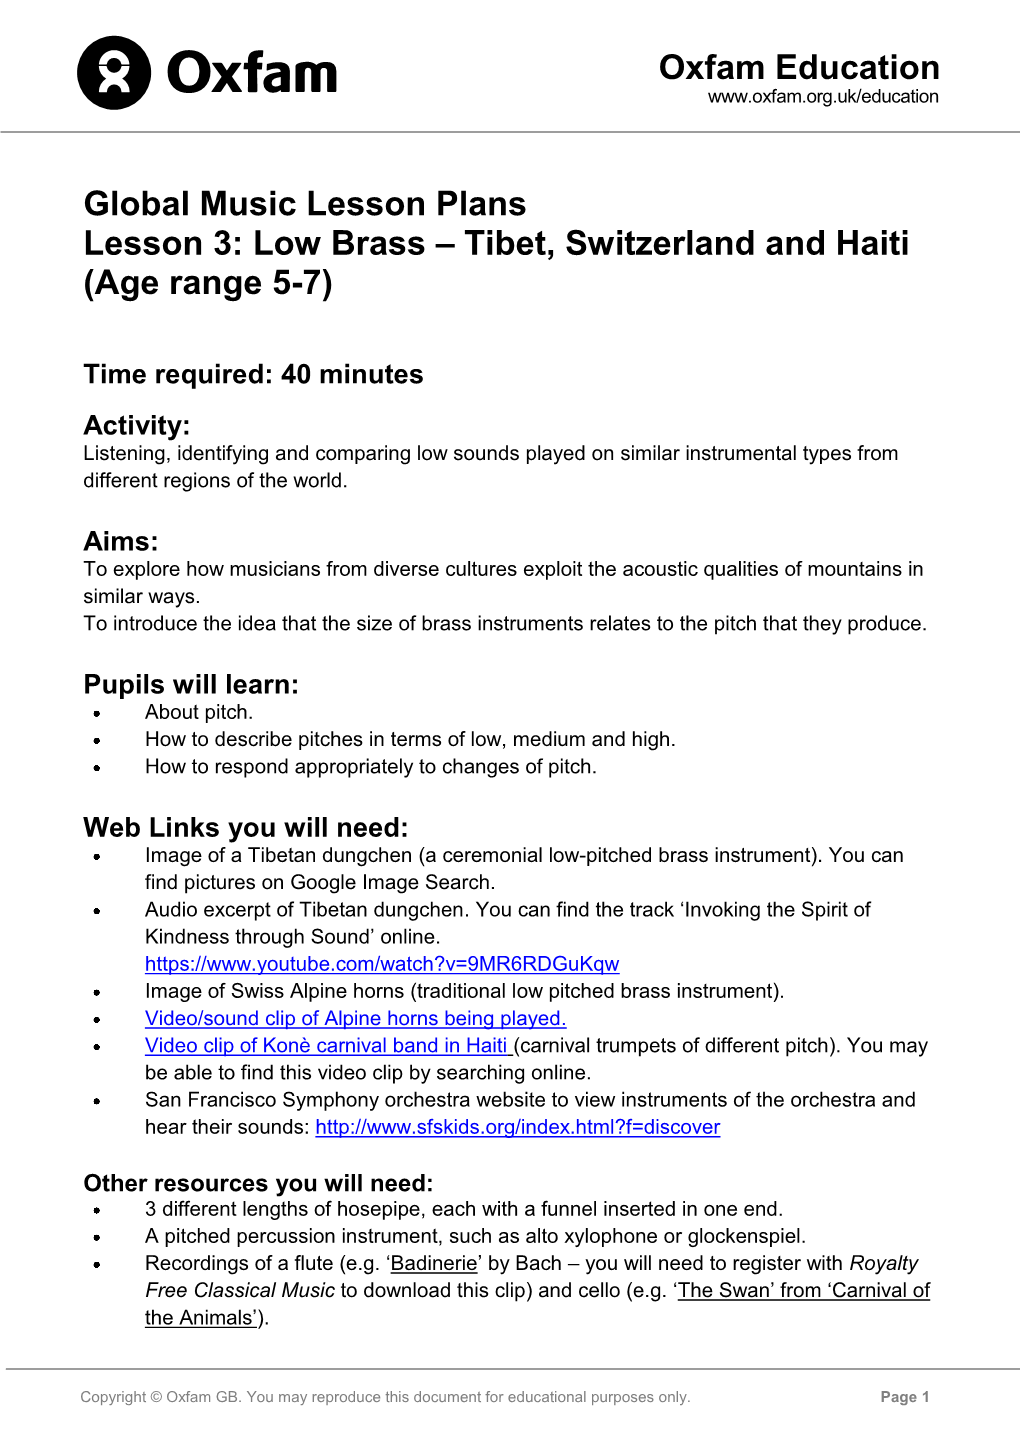 Low Brass – Tibet, Switzerland and Haiti (Age Range 5-7)